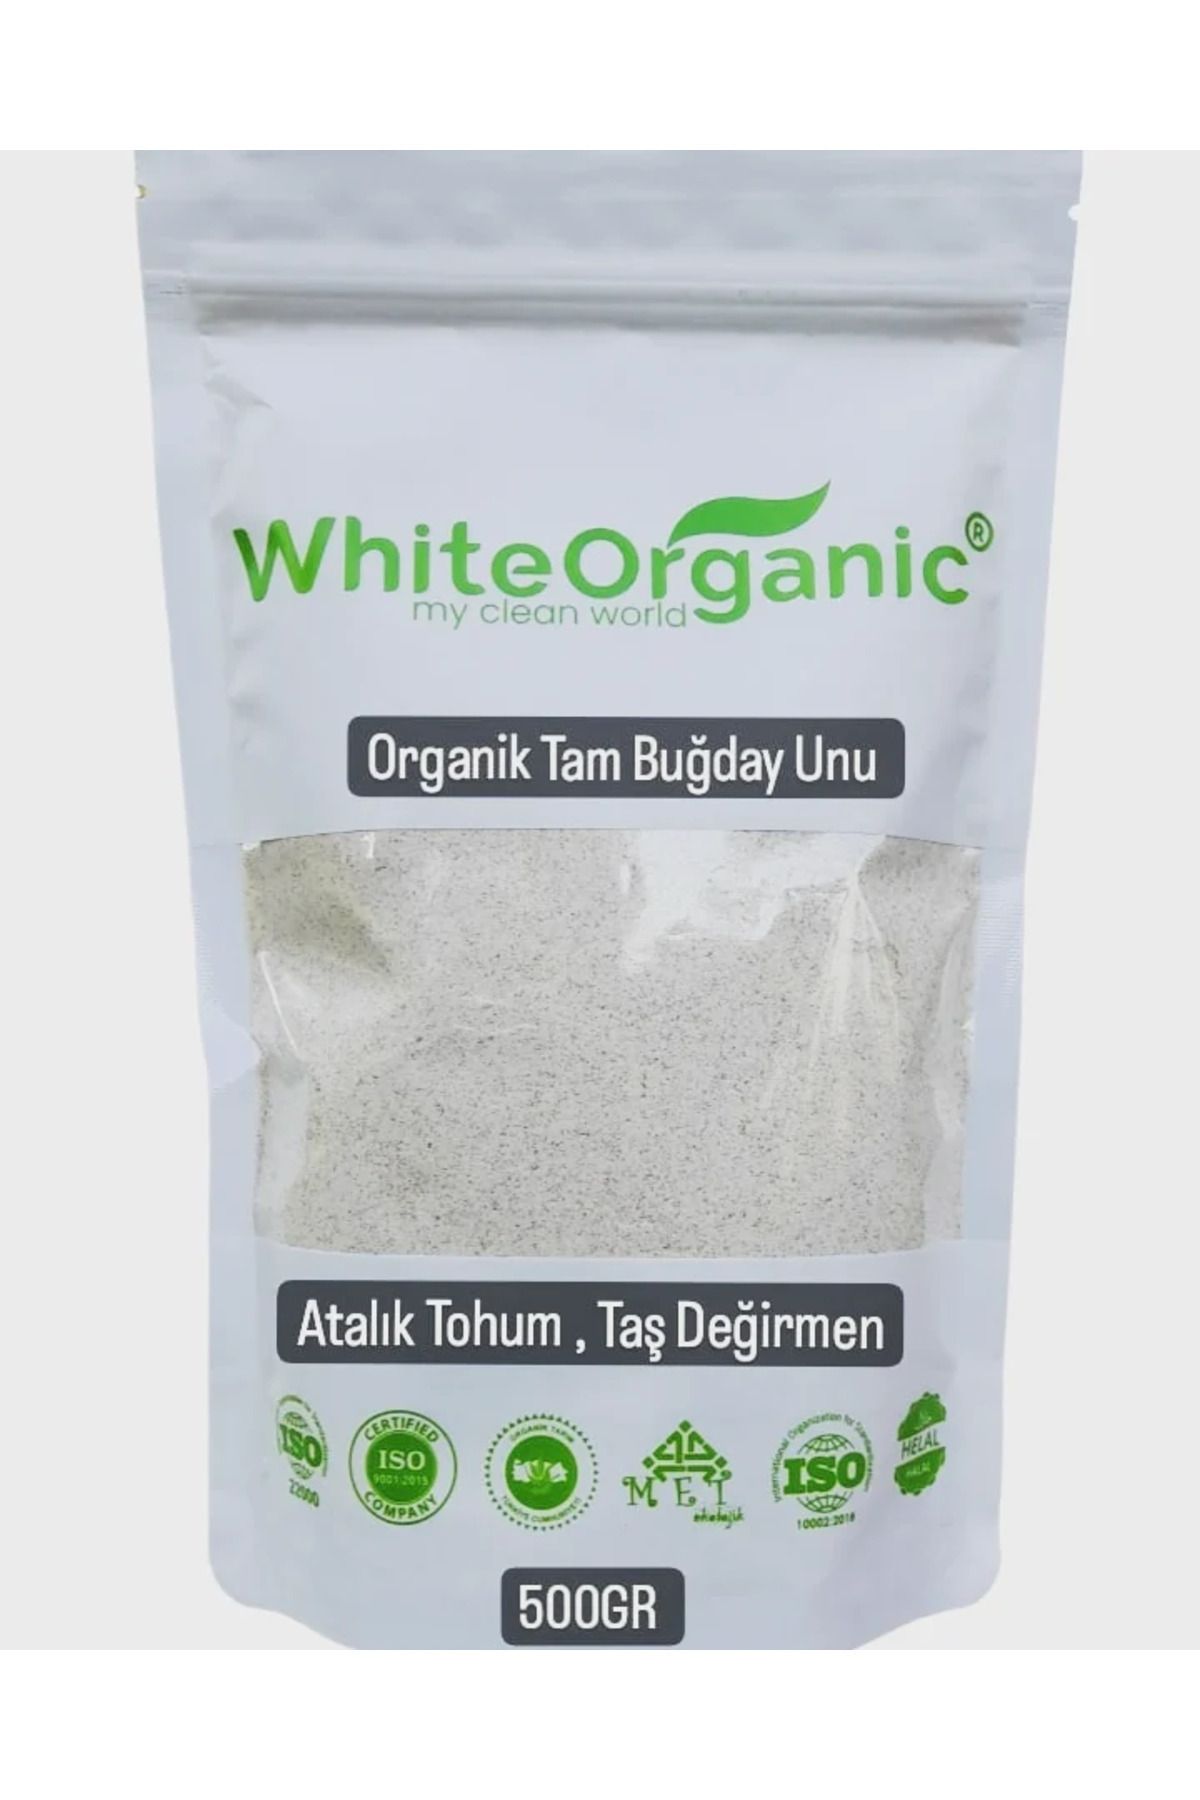 White Organic Organik Tam Buğday Unu 500 gr Atalık Tohum Taş Değirmen